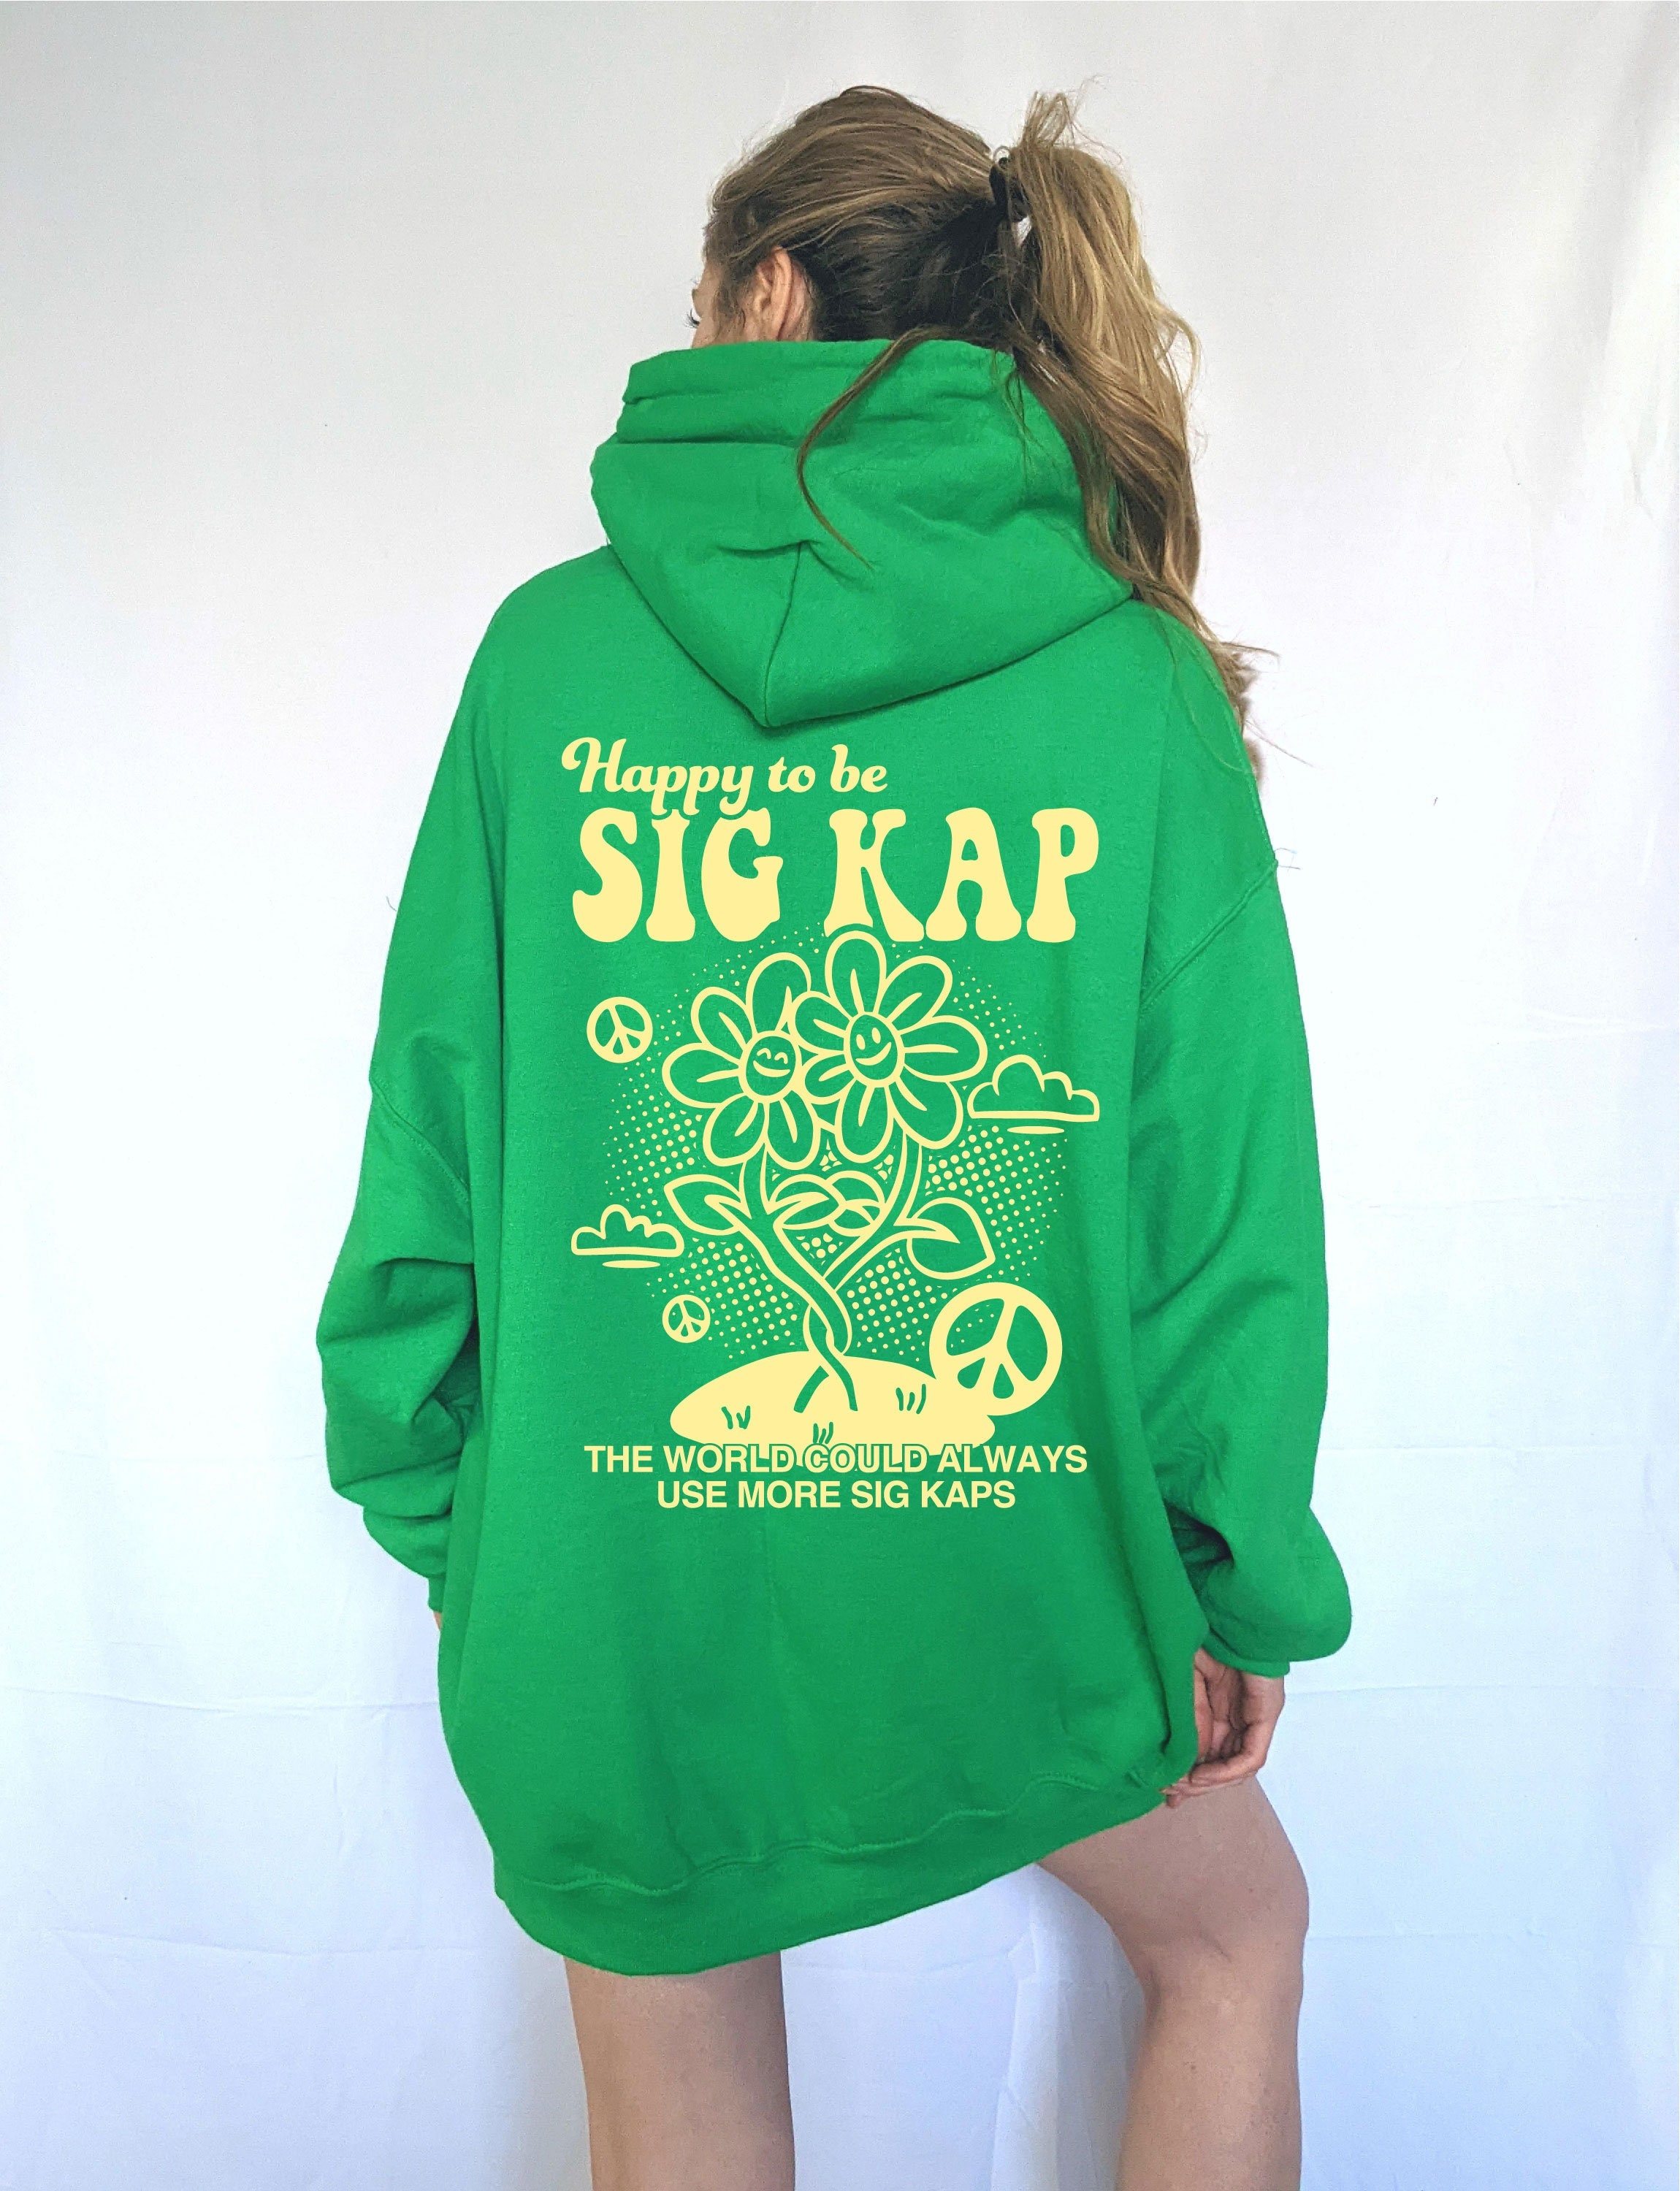 Happy Be Sig Kap Sorority Sweatshirt Sigma Kappa Sorority - Etsy